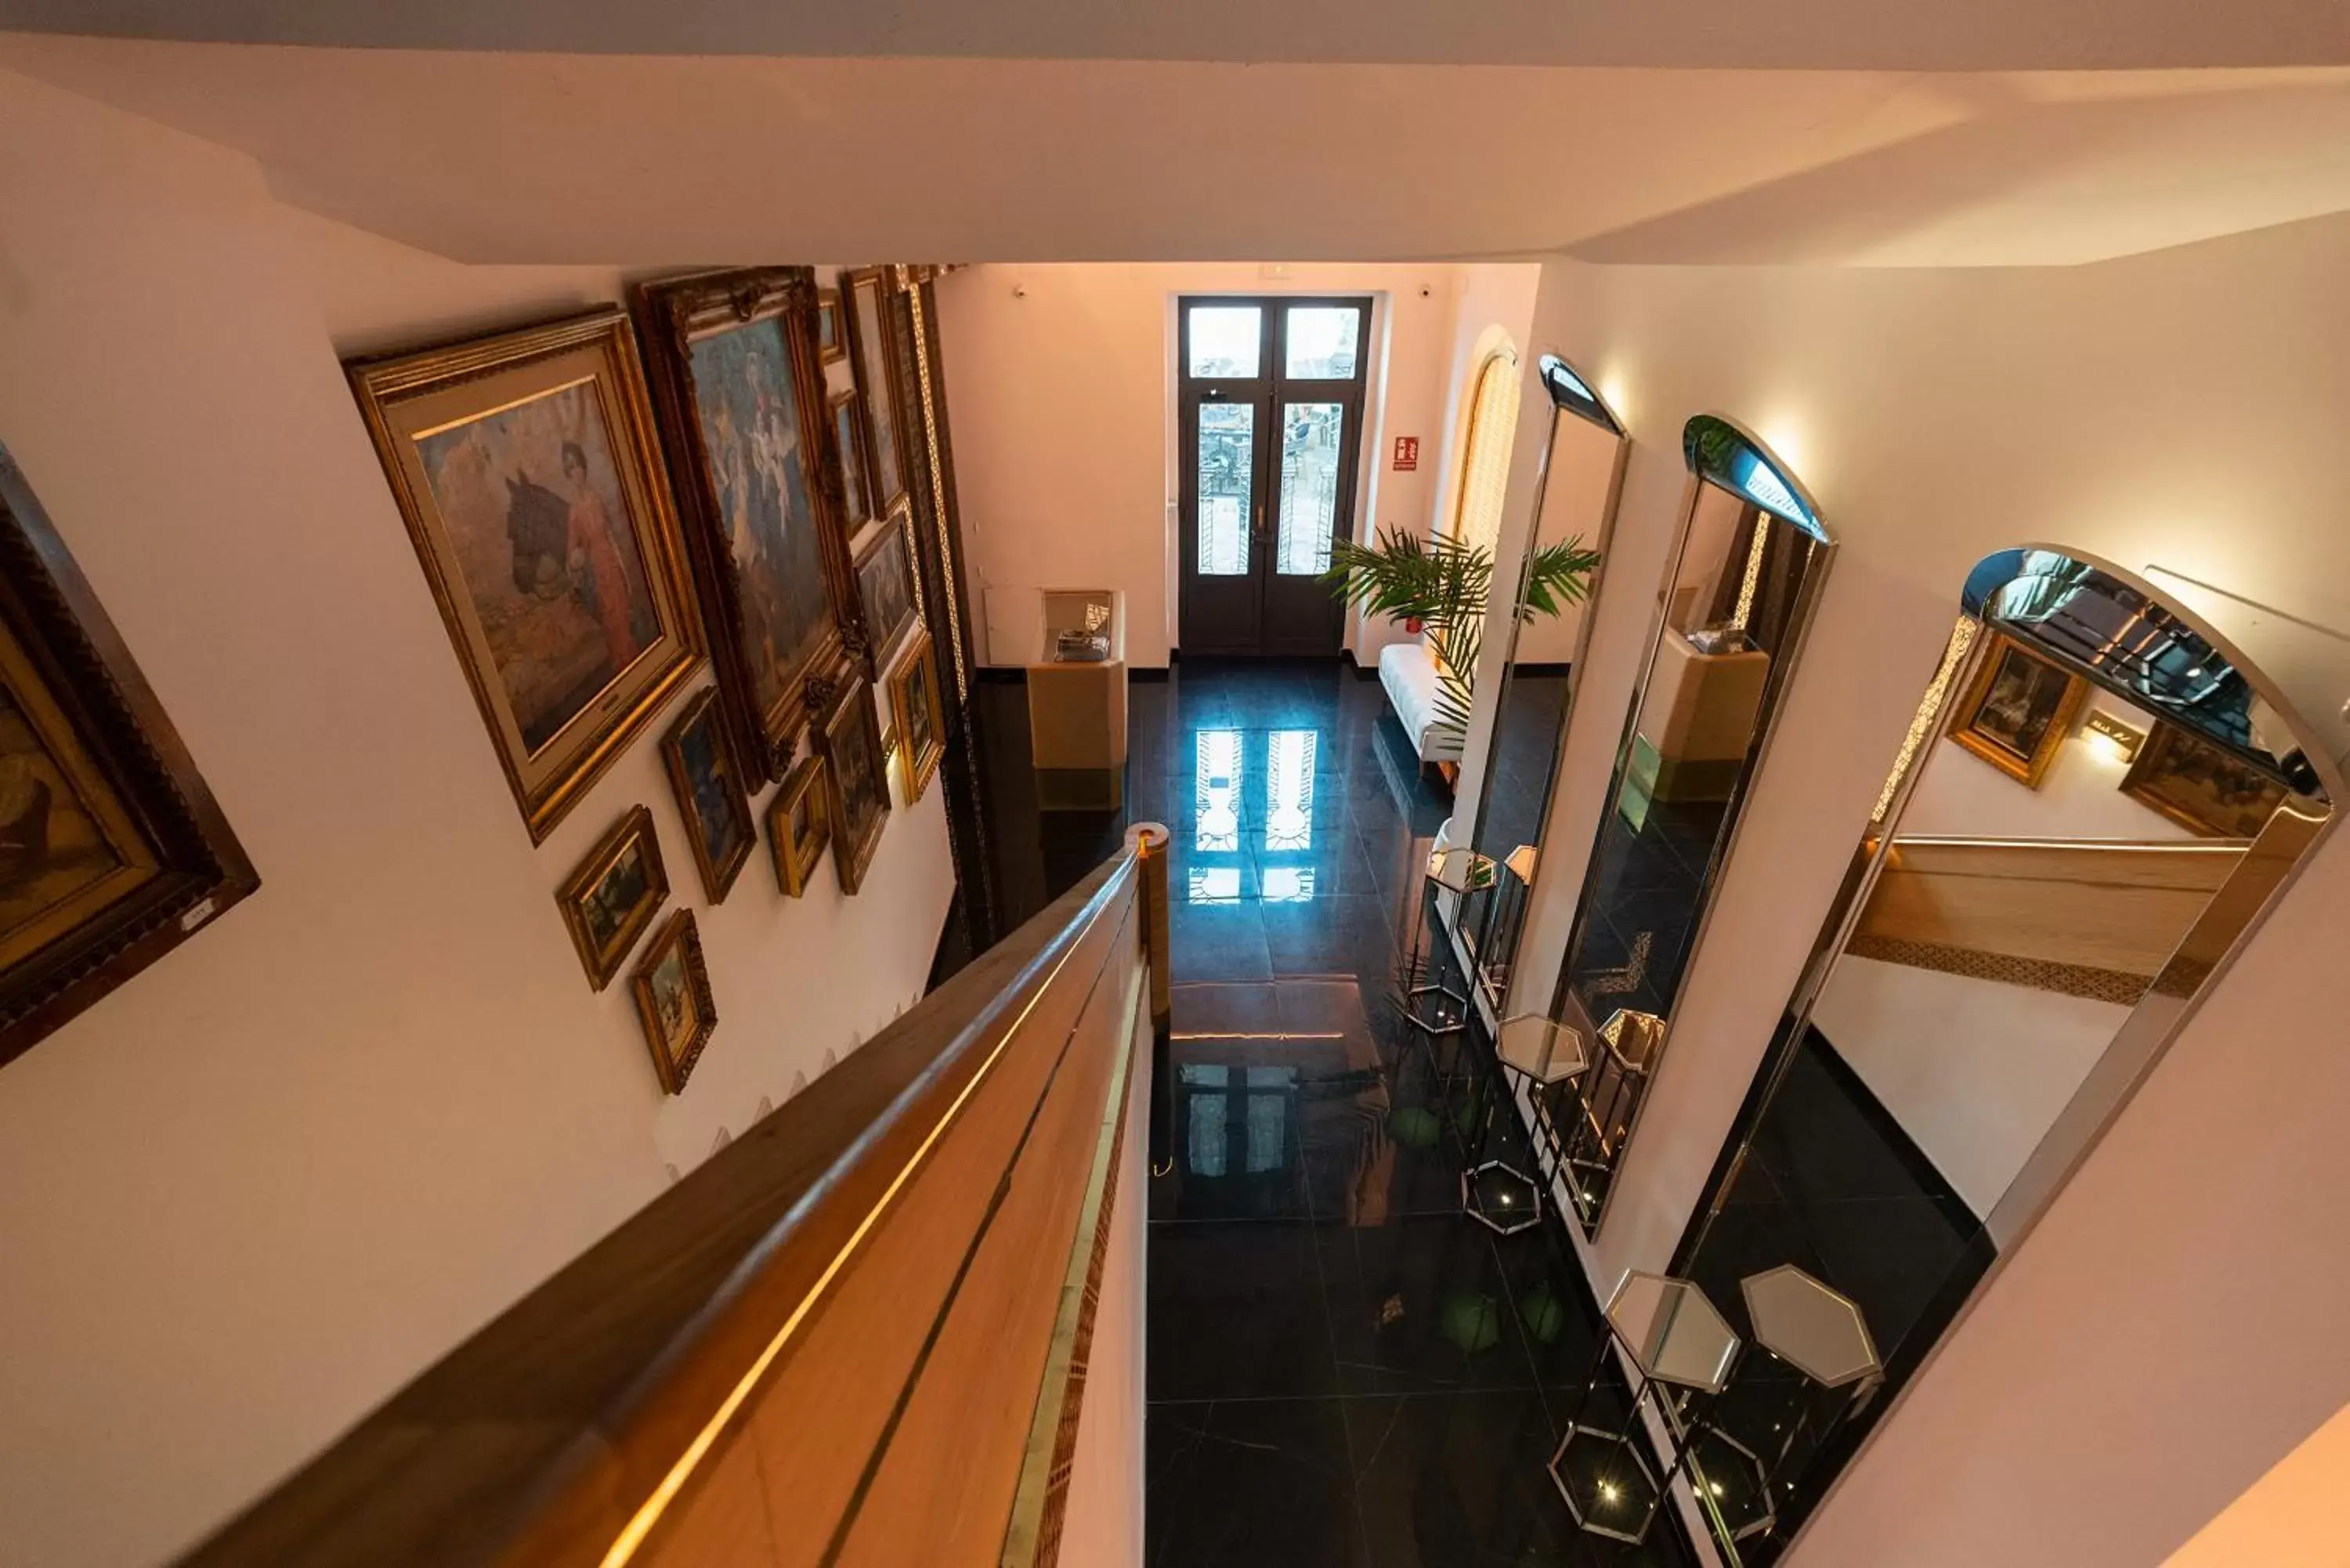 Lobby or reception in Hotel Casa Palacio la Sal